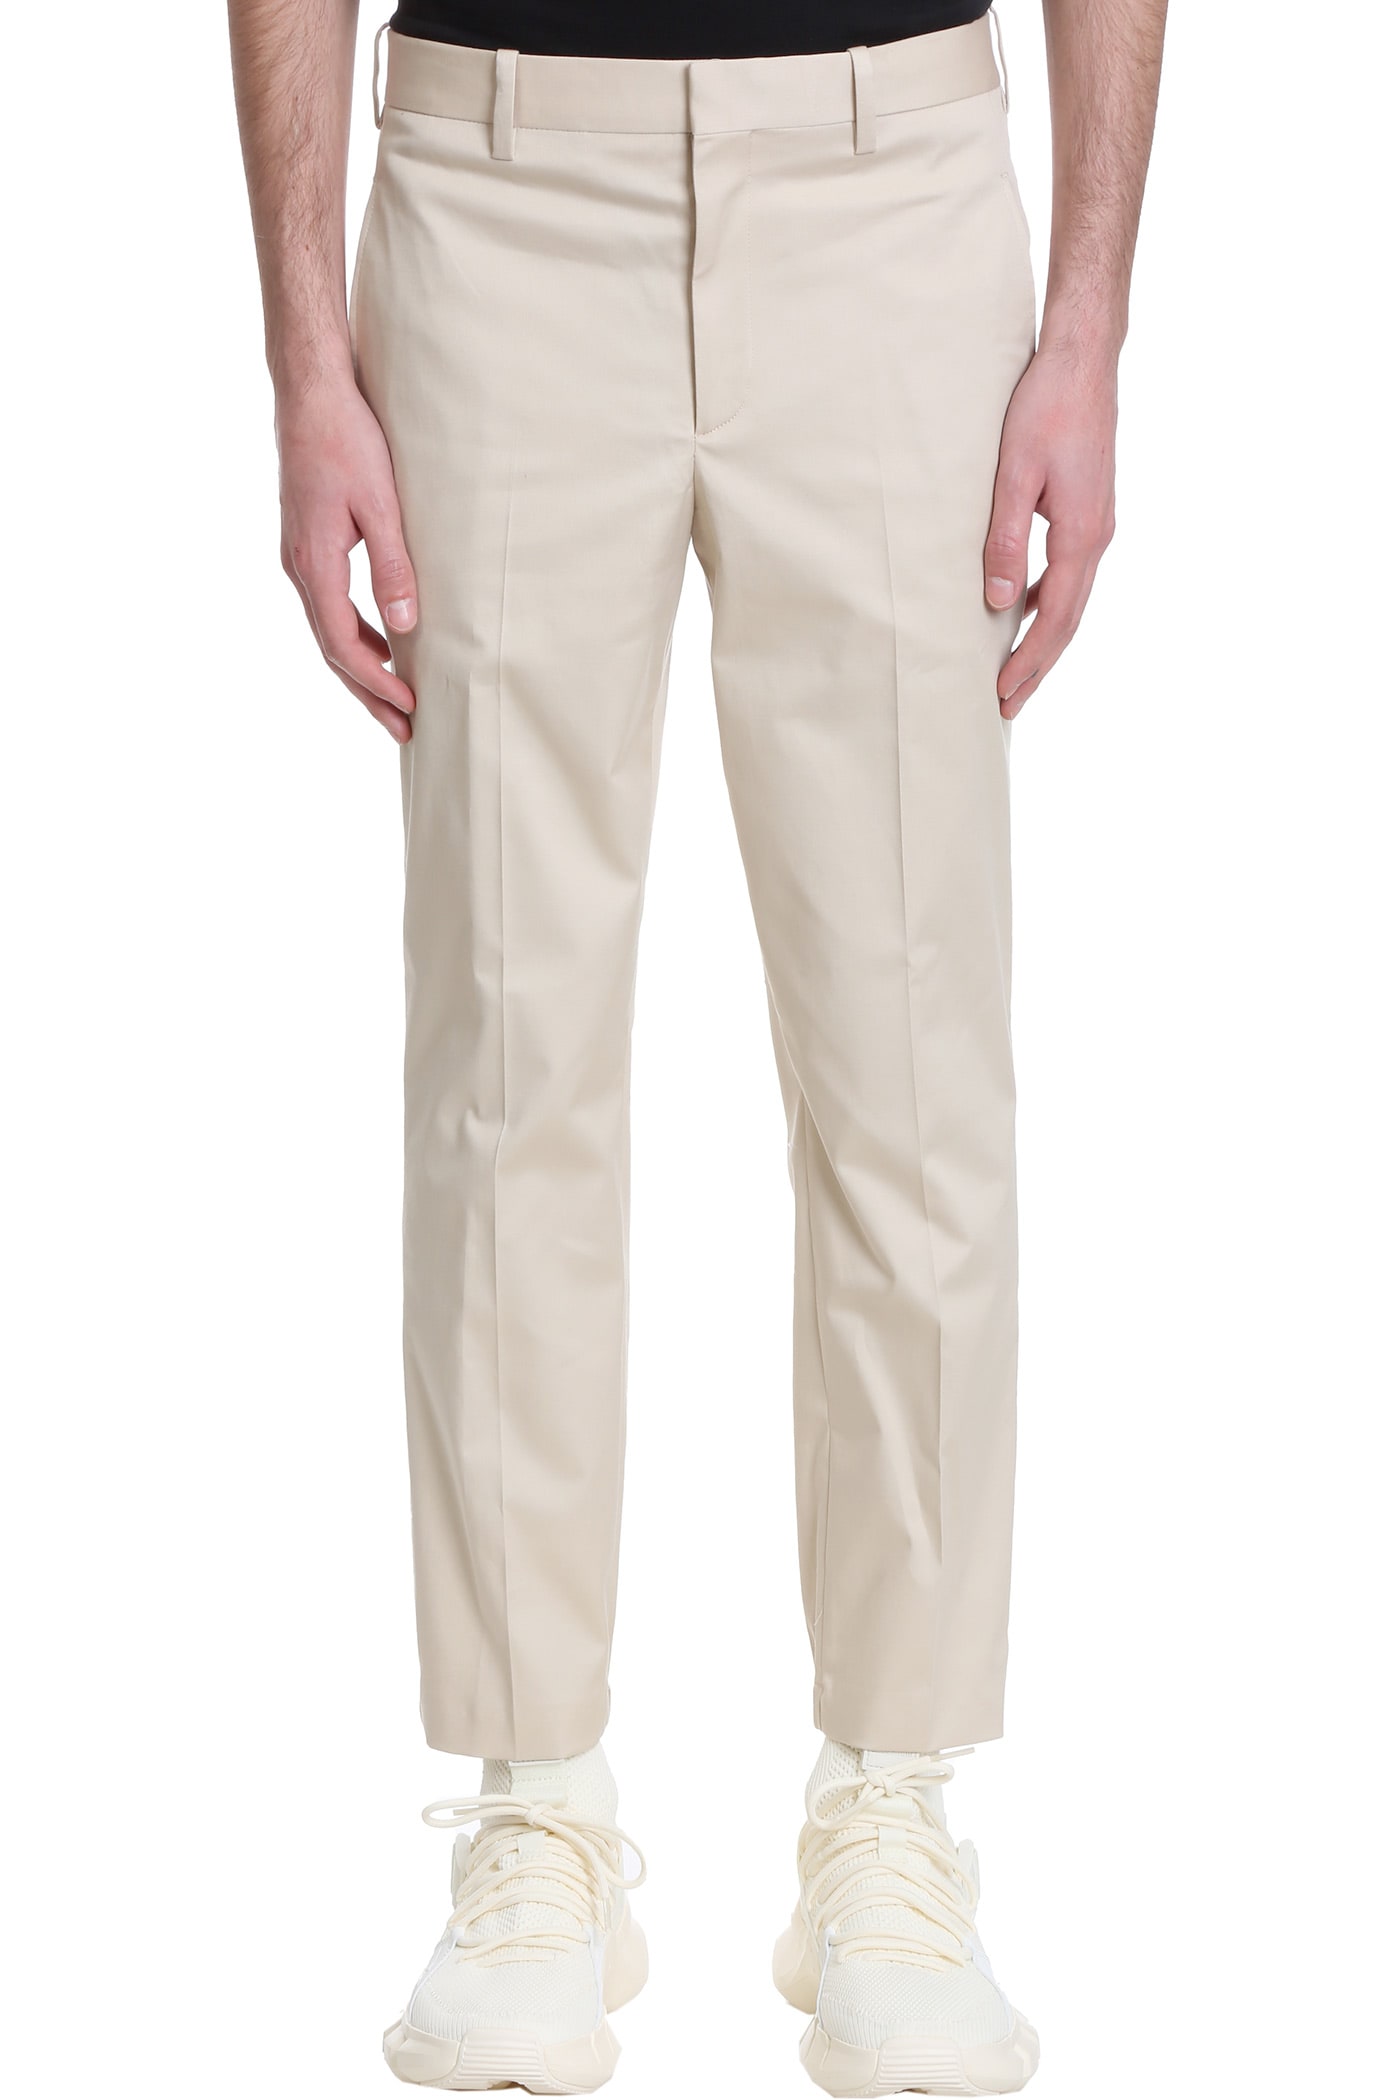 NEIL BARRETT trousers IN BEIGE COTTON,PBPA788HQ011427